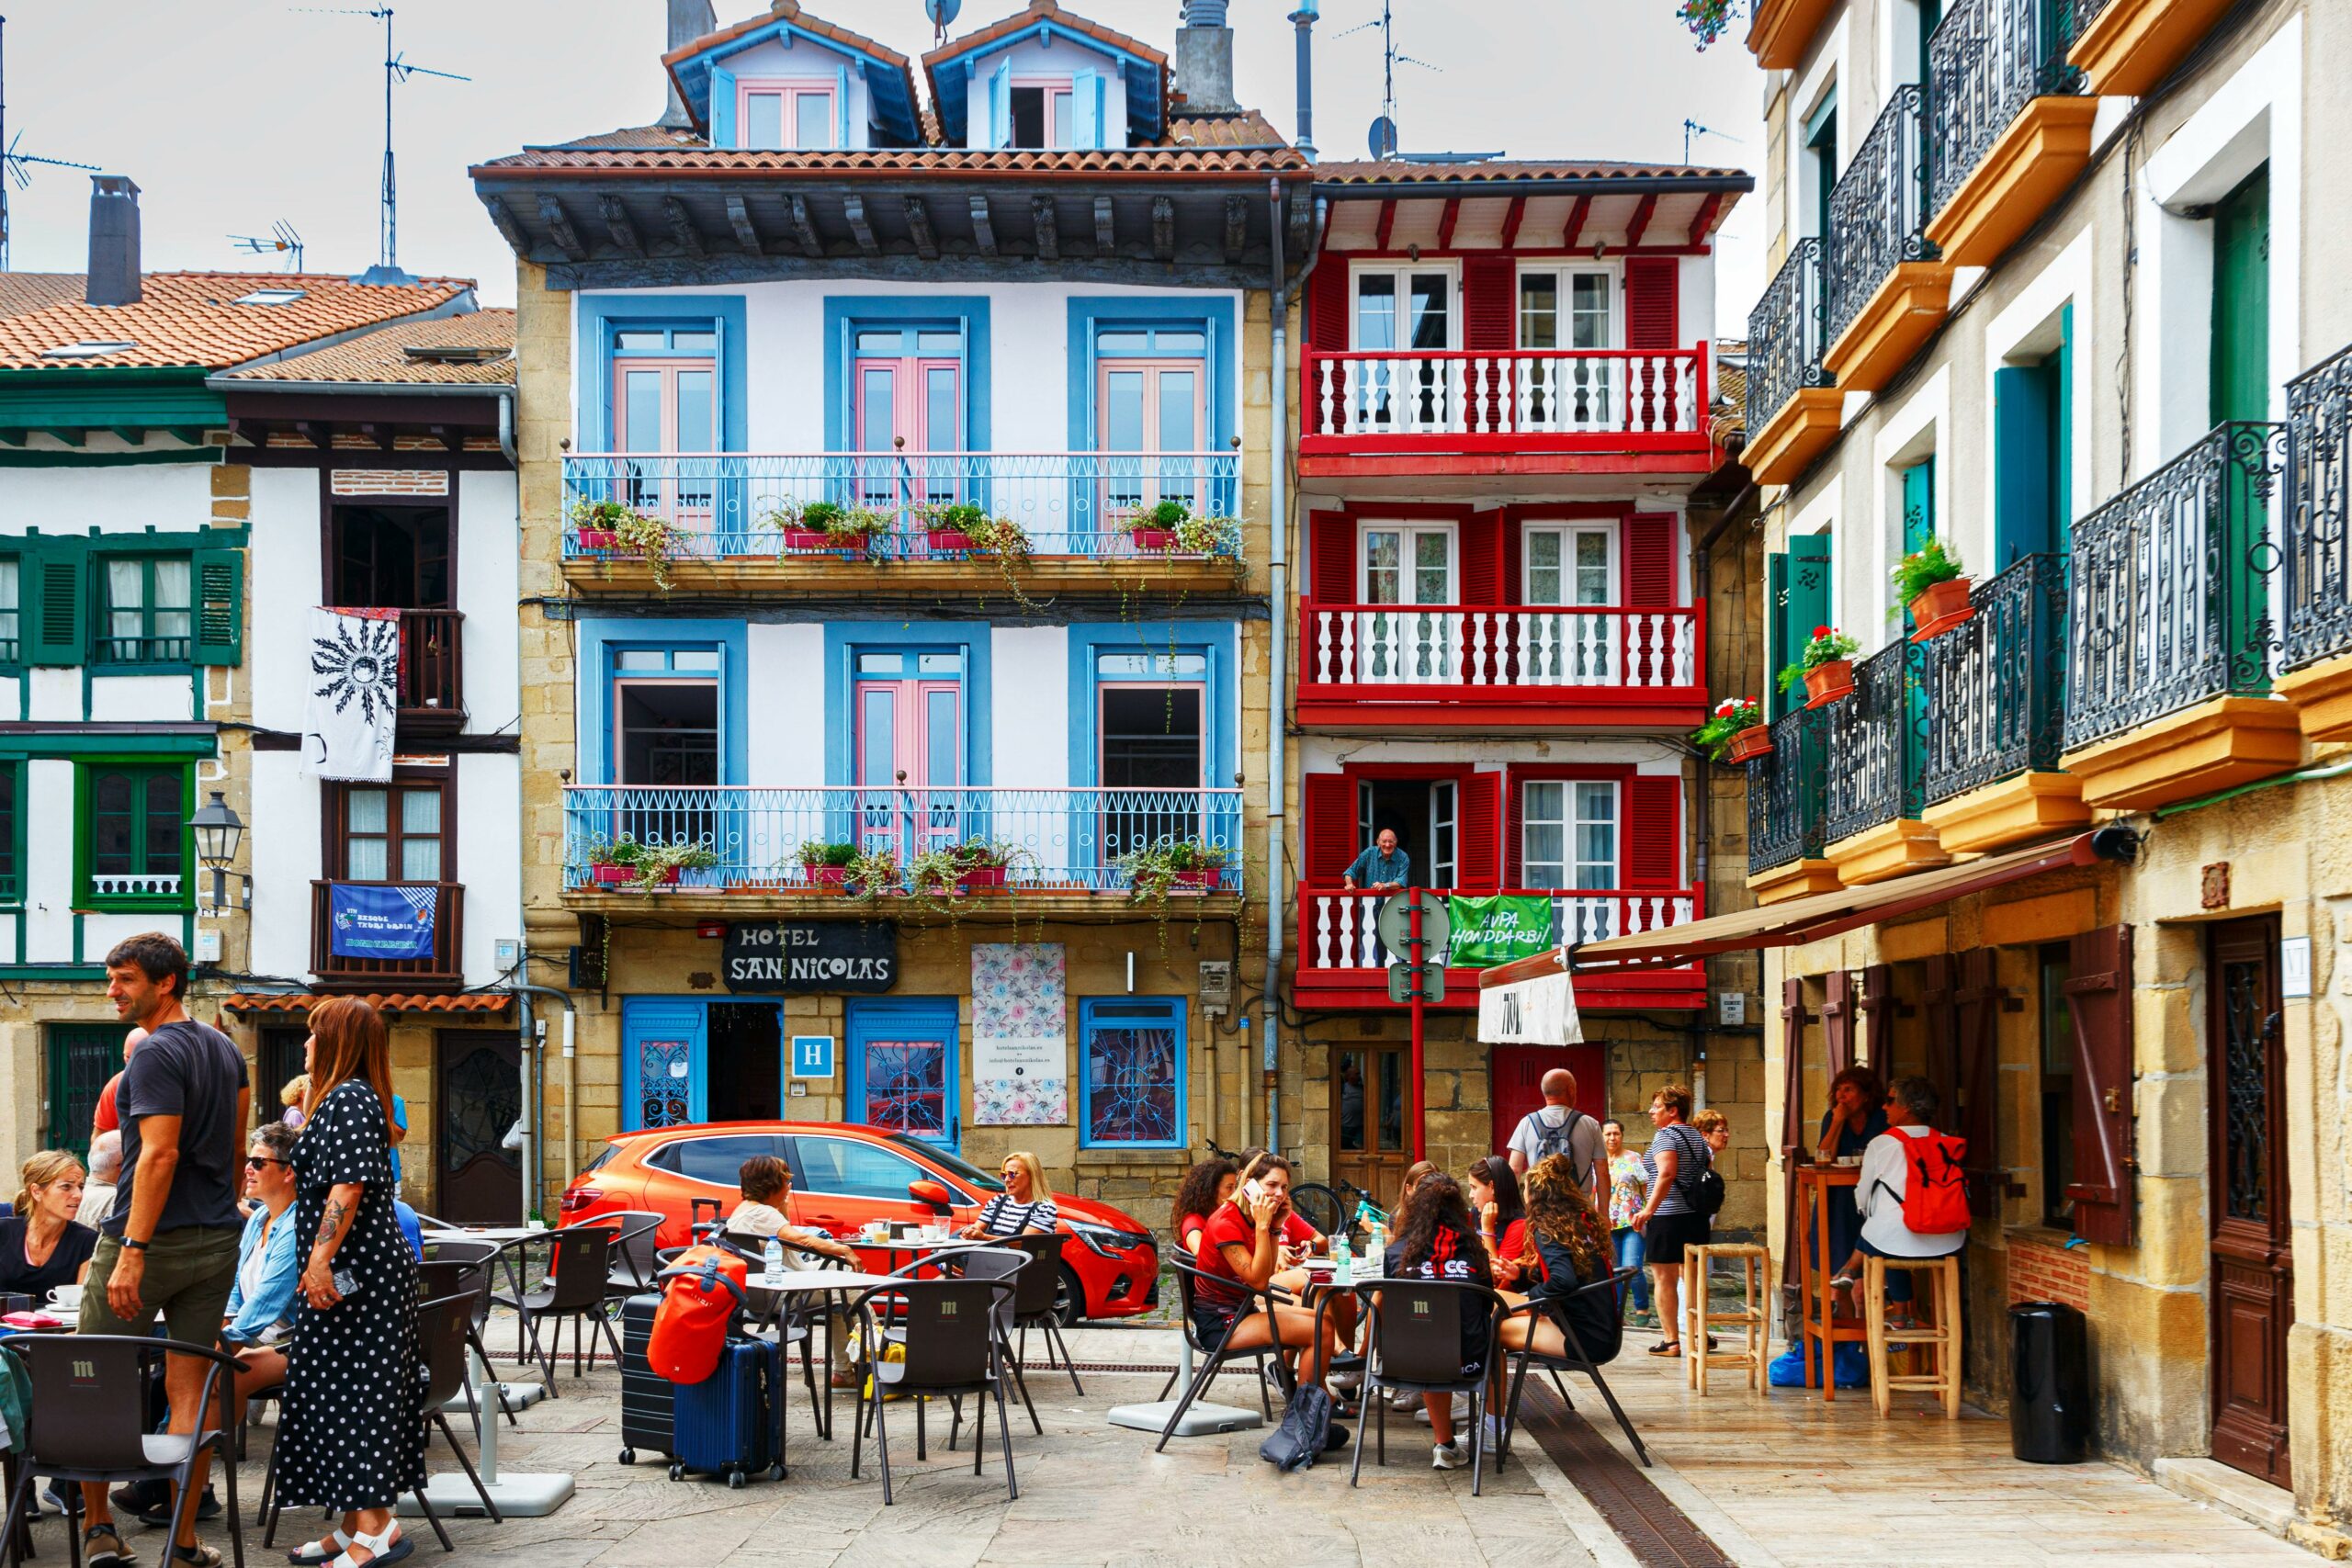 Terraza de un bar en una plaza con edificios coloridos en Hondarribia, País Vasco